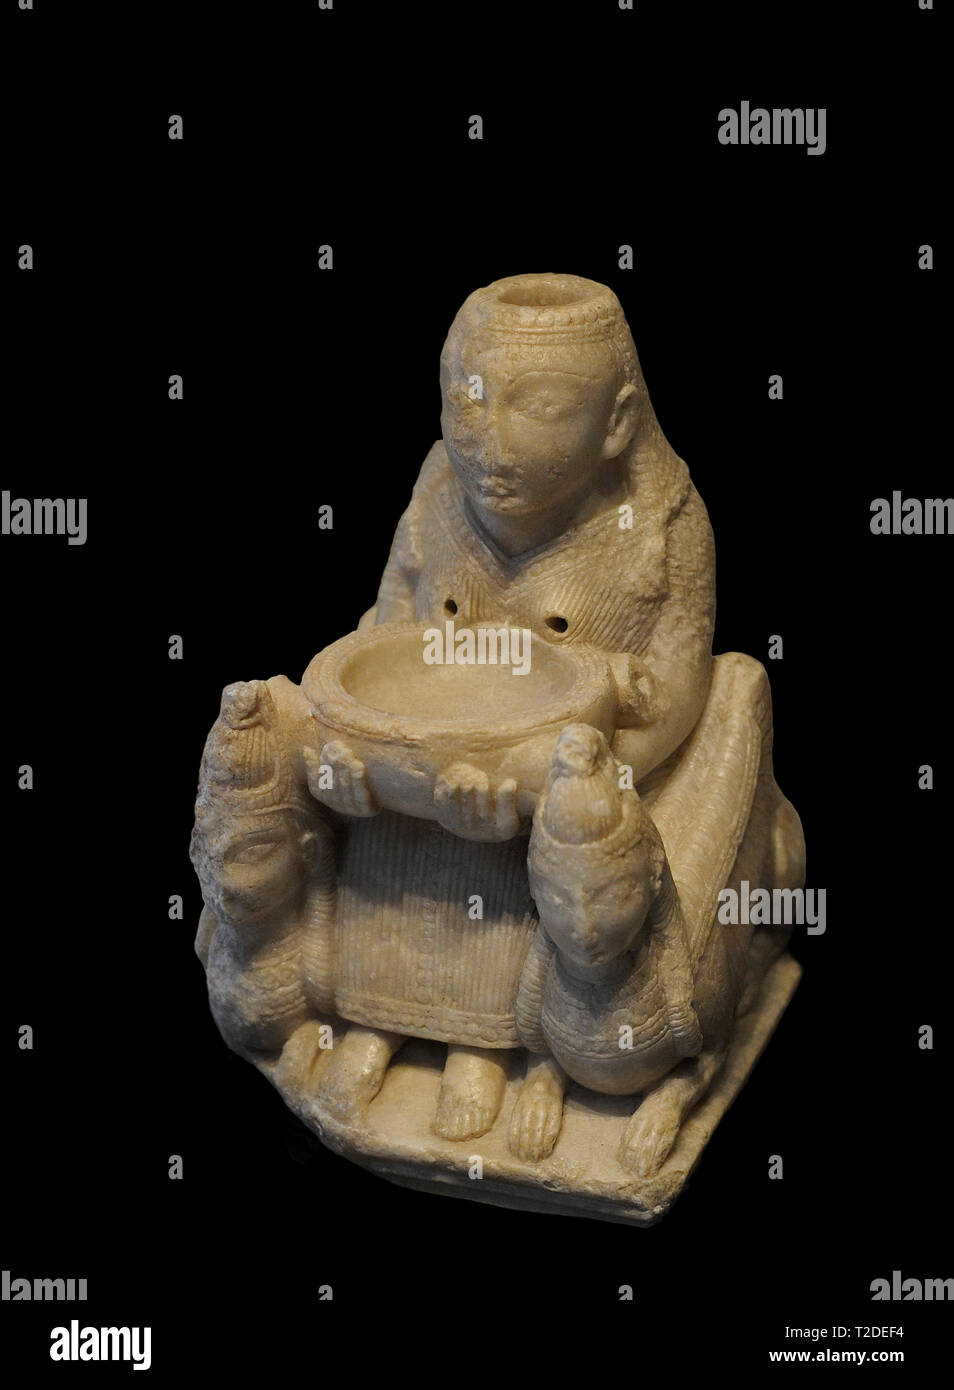 Dame von Galera. Skulptur von phönizischen Produktion der Anfang des 8. Jh. v. Chr.. Alabaster. Es zeigt einen inthronisierten Göttin (Astarte) flankiert von zwei Bildnisse mit dem ägyptischen Krone. Eine Schüssel mit beiden Händen halten. Es war, als ein Ritual, das Schiff für die Öl zu salben der Verstorbenen gedacht. In einer iberischen Grab aus dem 5. Jahrhundert v. Chr. gefunden. Aus dem Tutugi Nekropole, Zone I, Grab 20 (Galera, Provinz Granada, Andalusien, Spanien). Nationalen Archäologischen Museum. Madrid. Spanien. Stockfoto